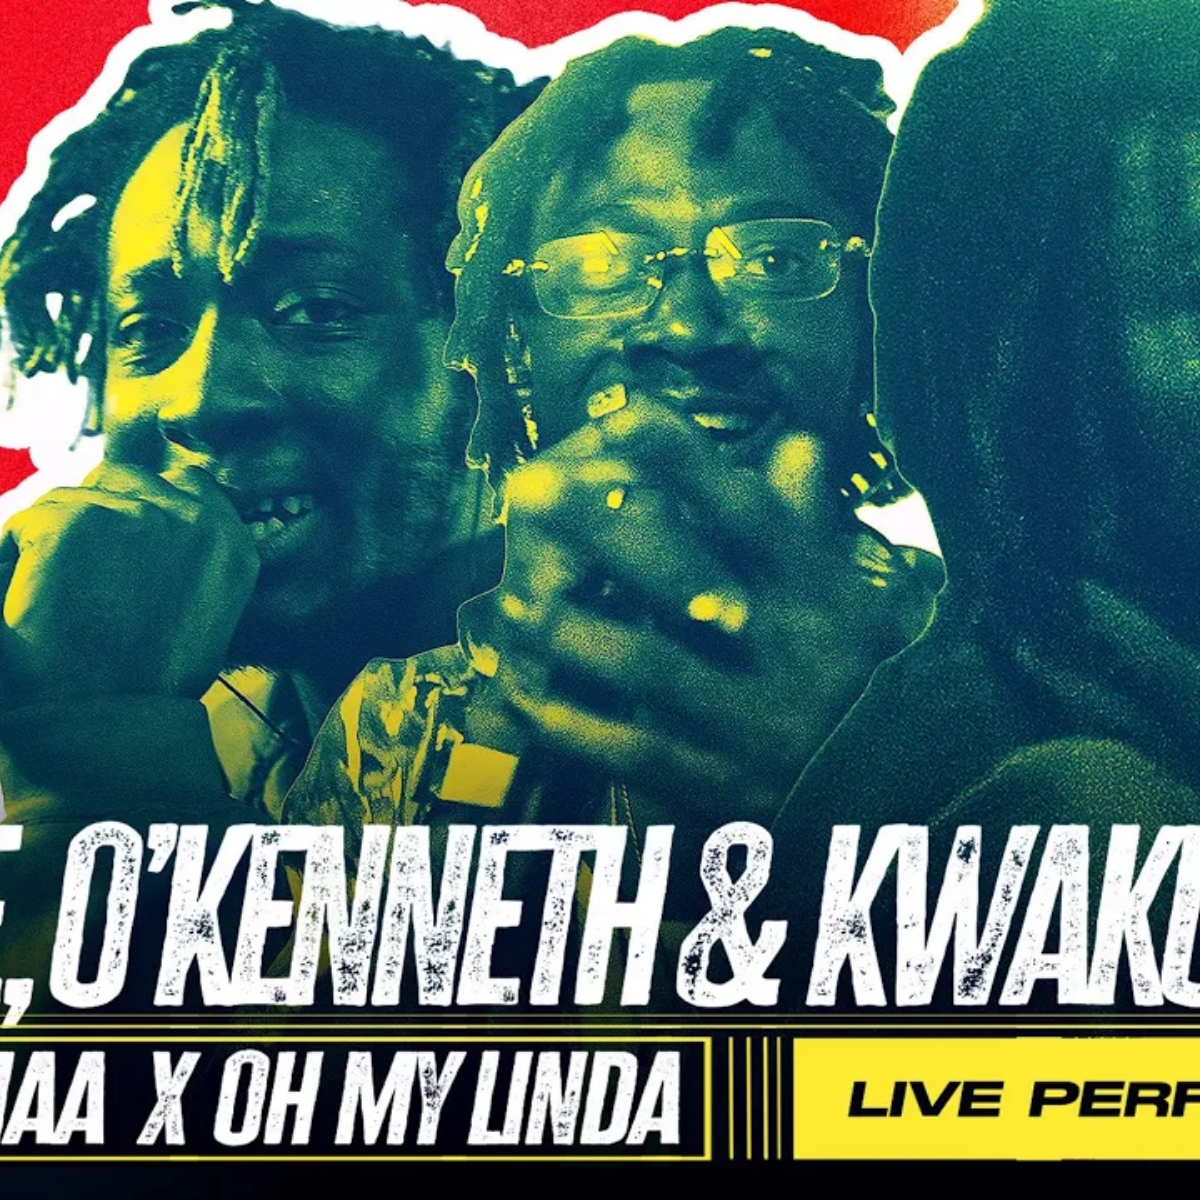 Reggie, OKenneth & Kwaku DMC - Obaa Hemaa x Oh My Linda (Live) 8